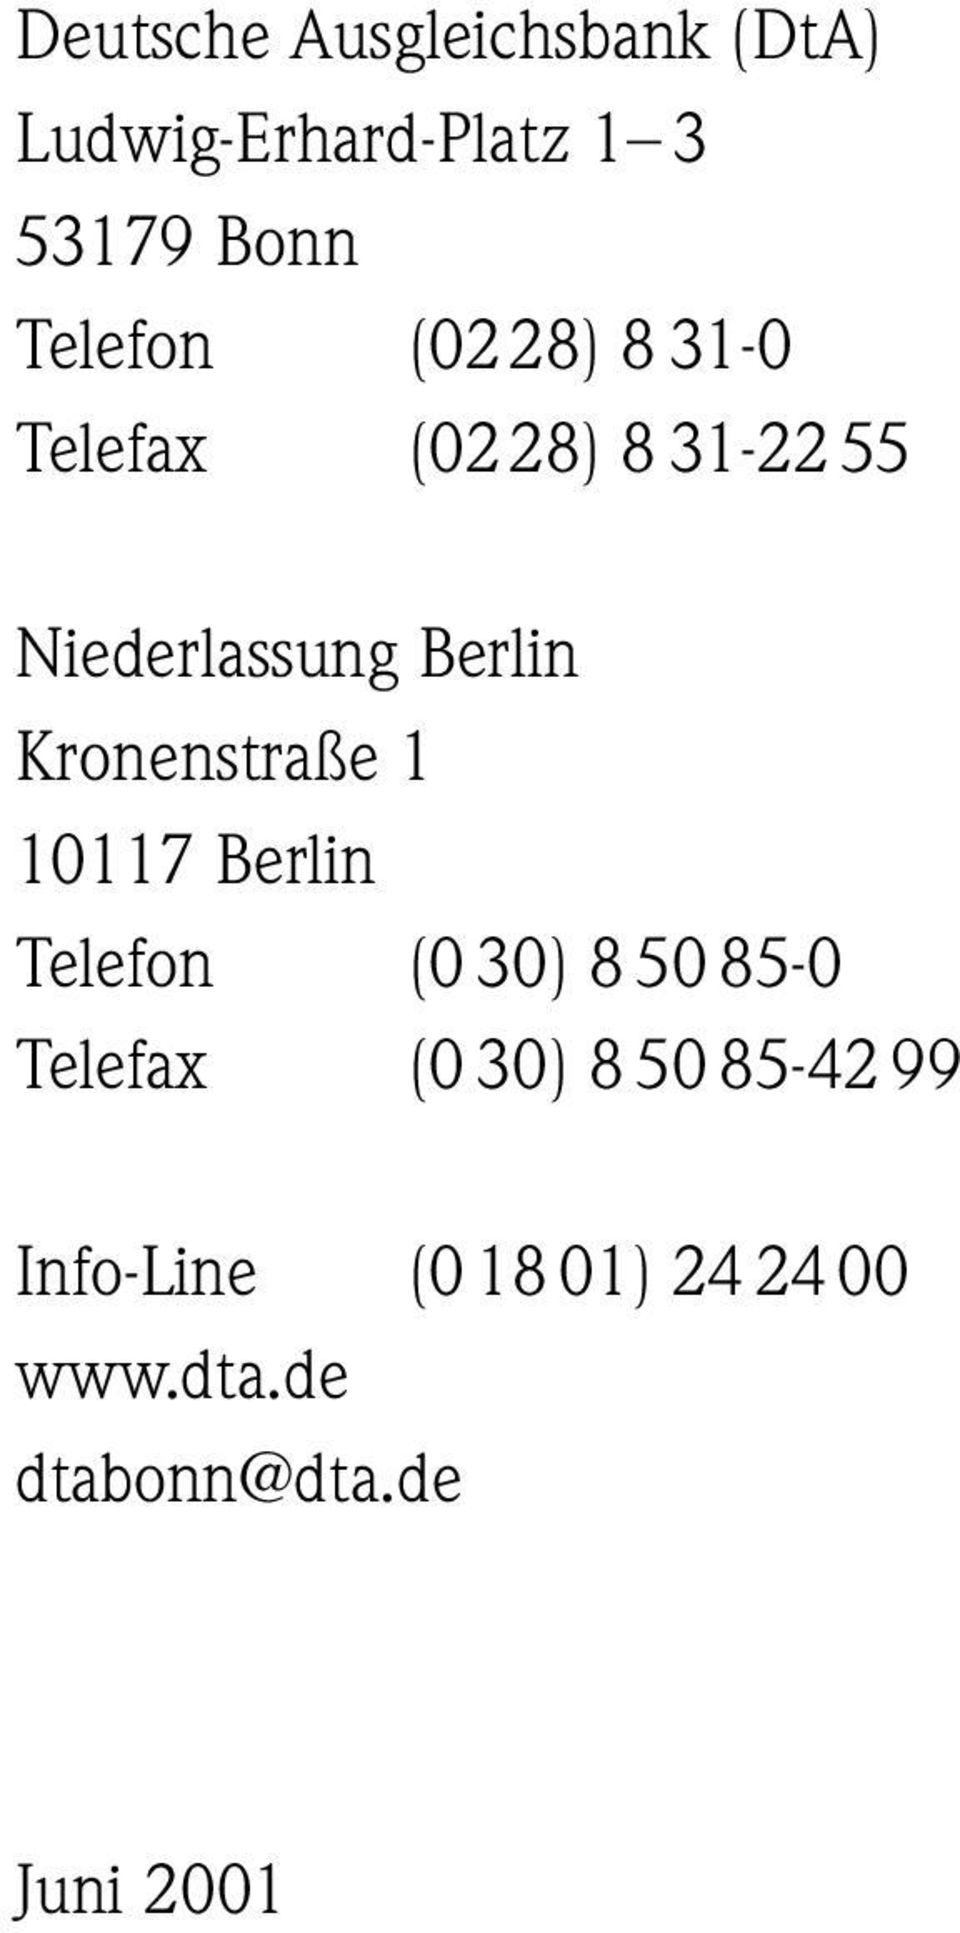 Kronenstraße 1 10117 Berlin Telefon (0 30) 8 50 85-0 Telefax (0 30) 8